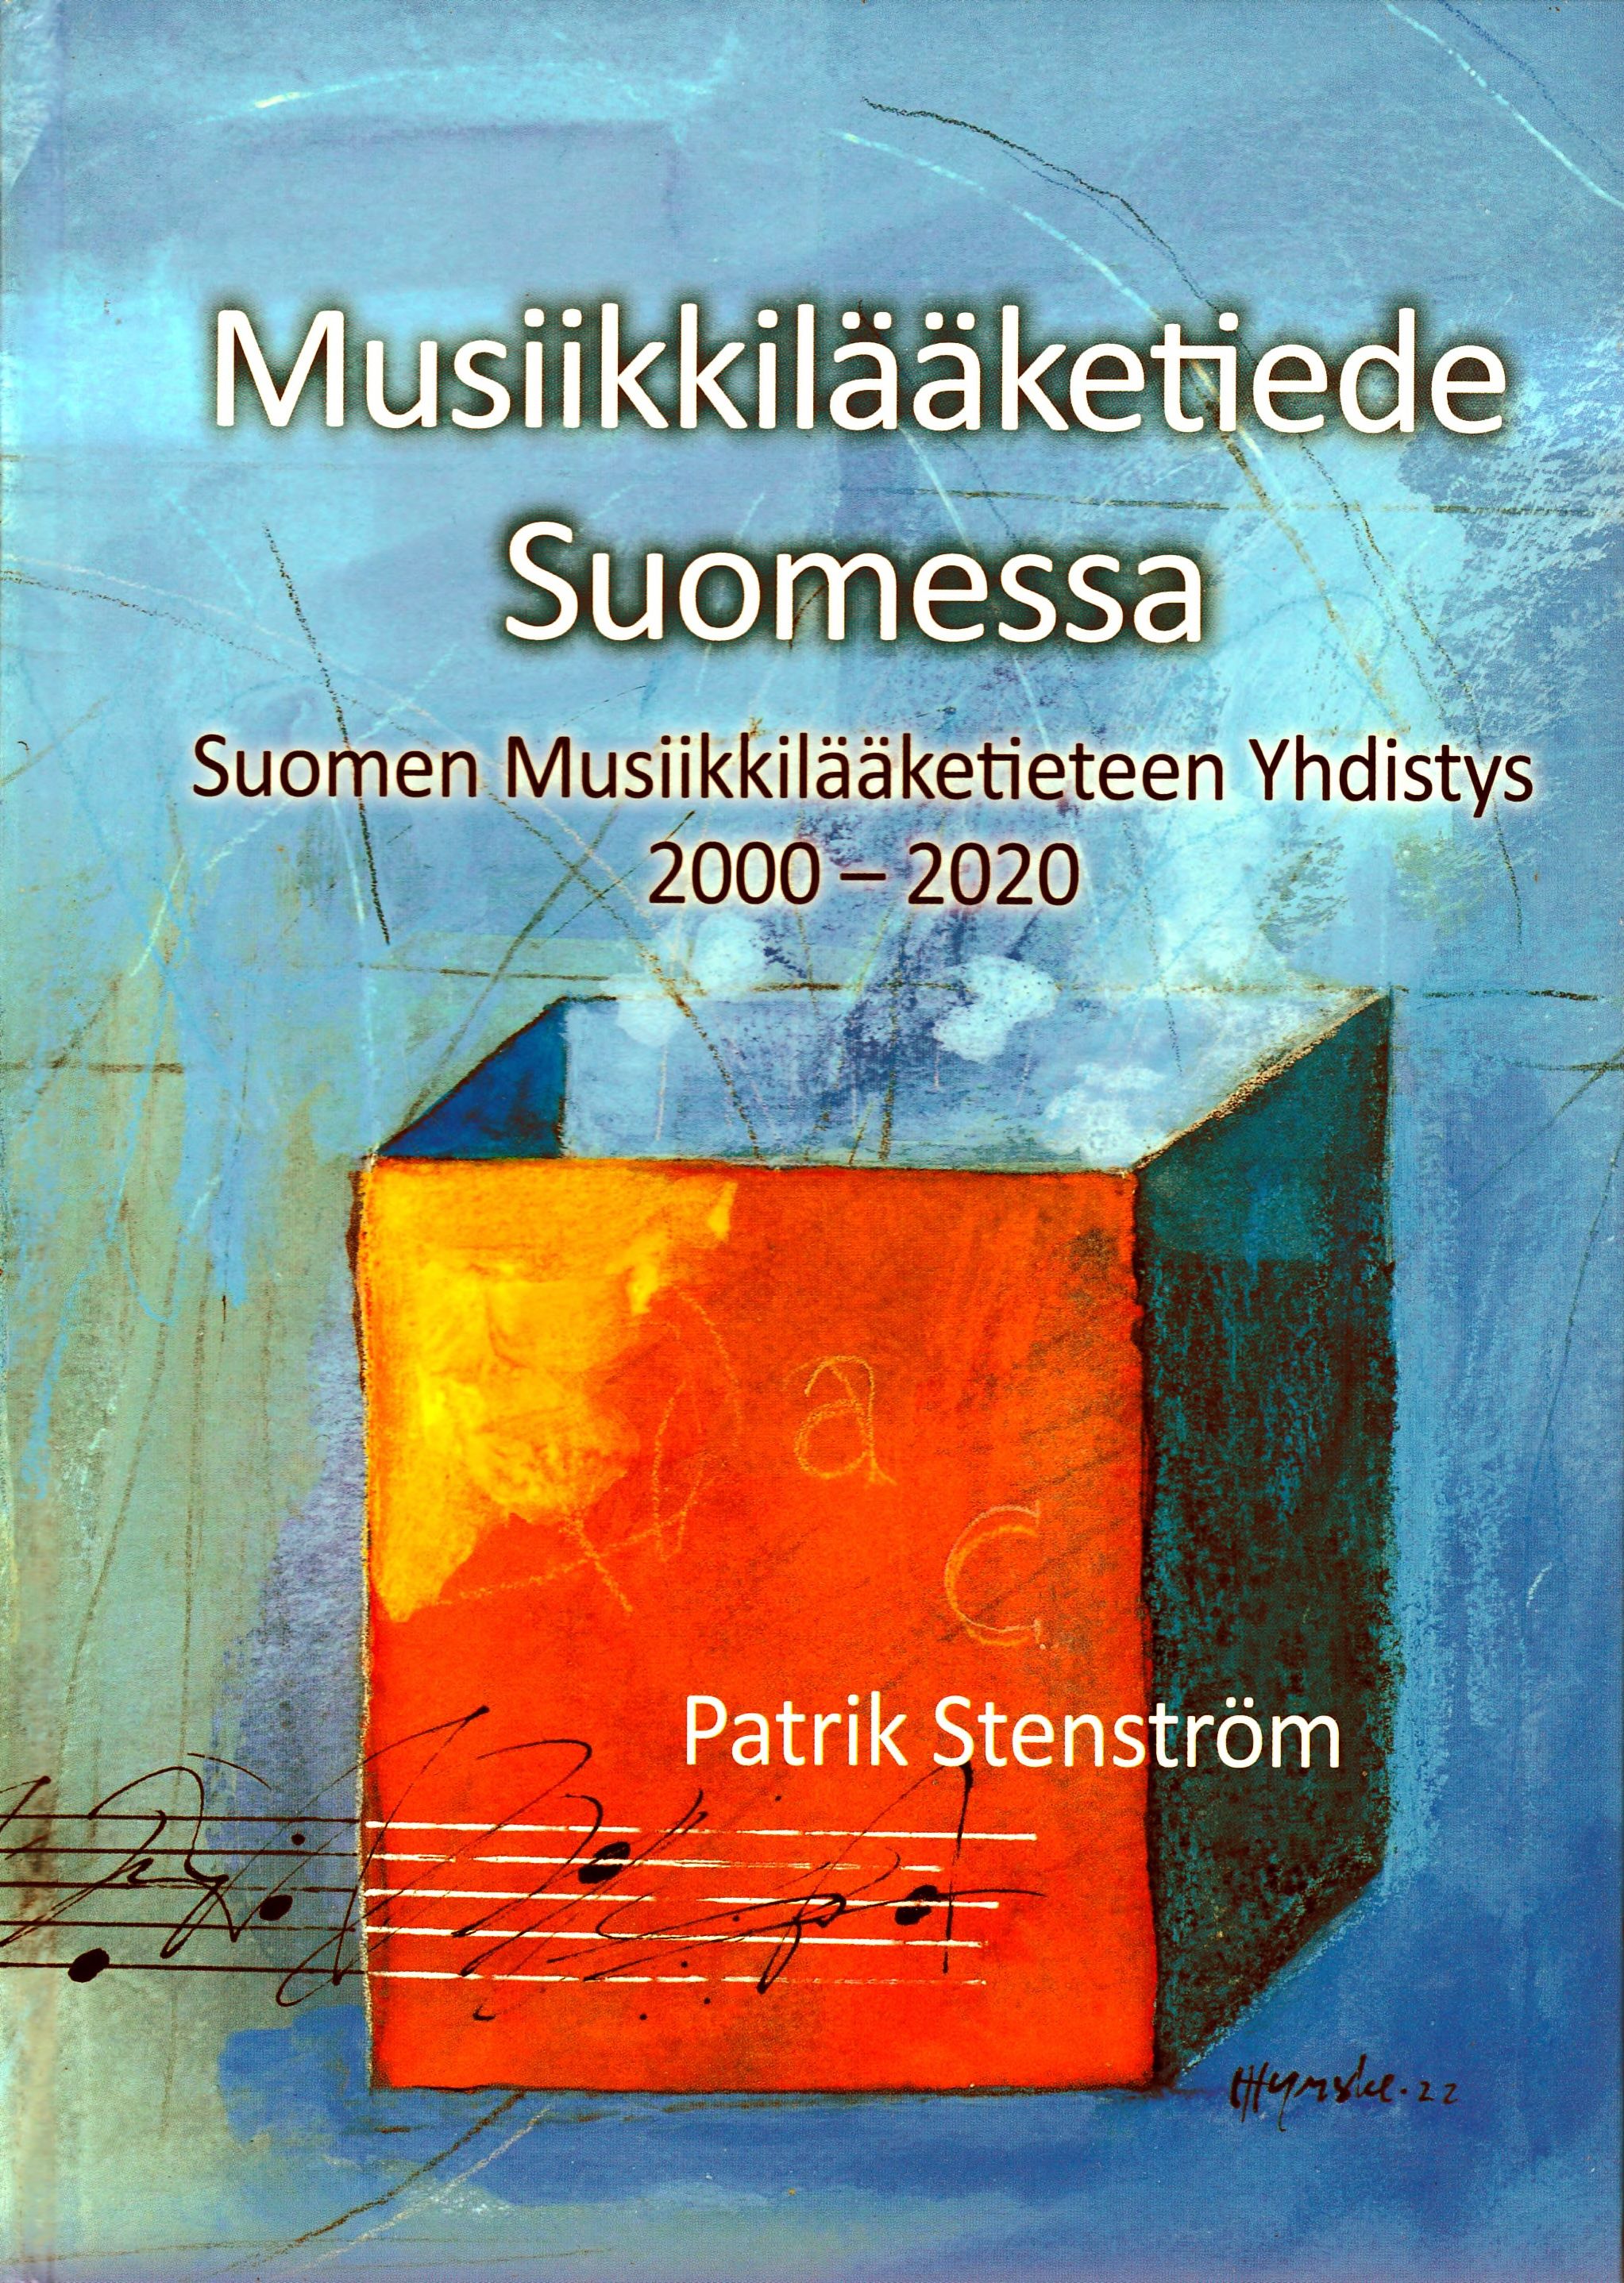 Patrik Stenström : Musiikkilääketiede Suomessa